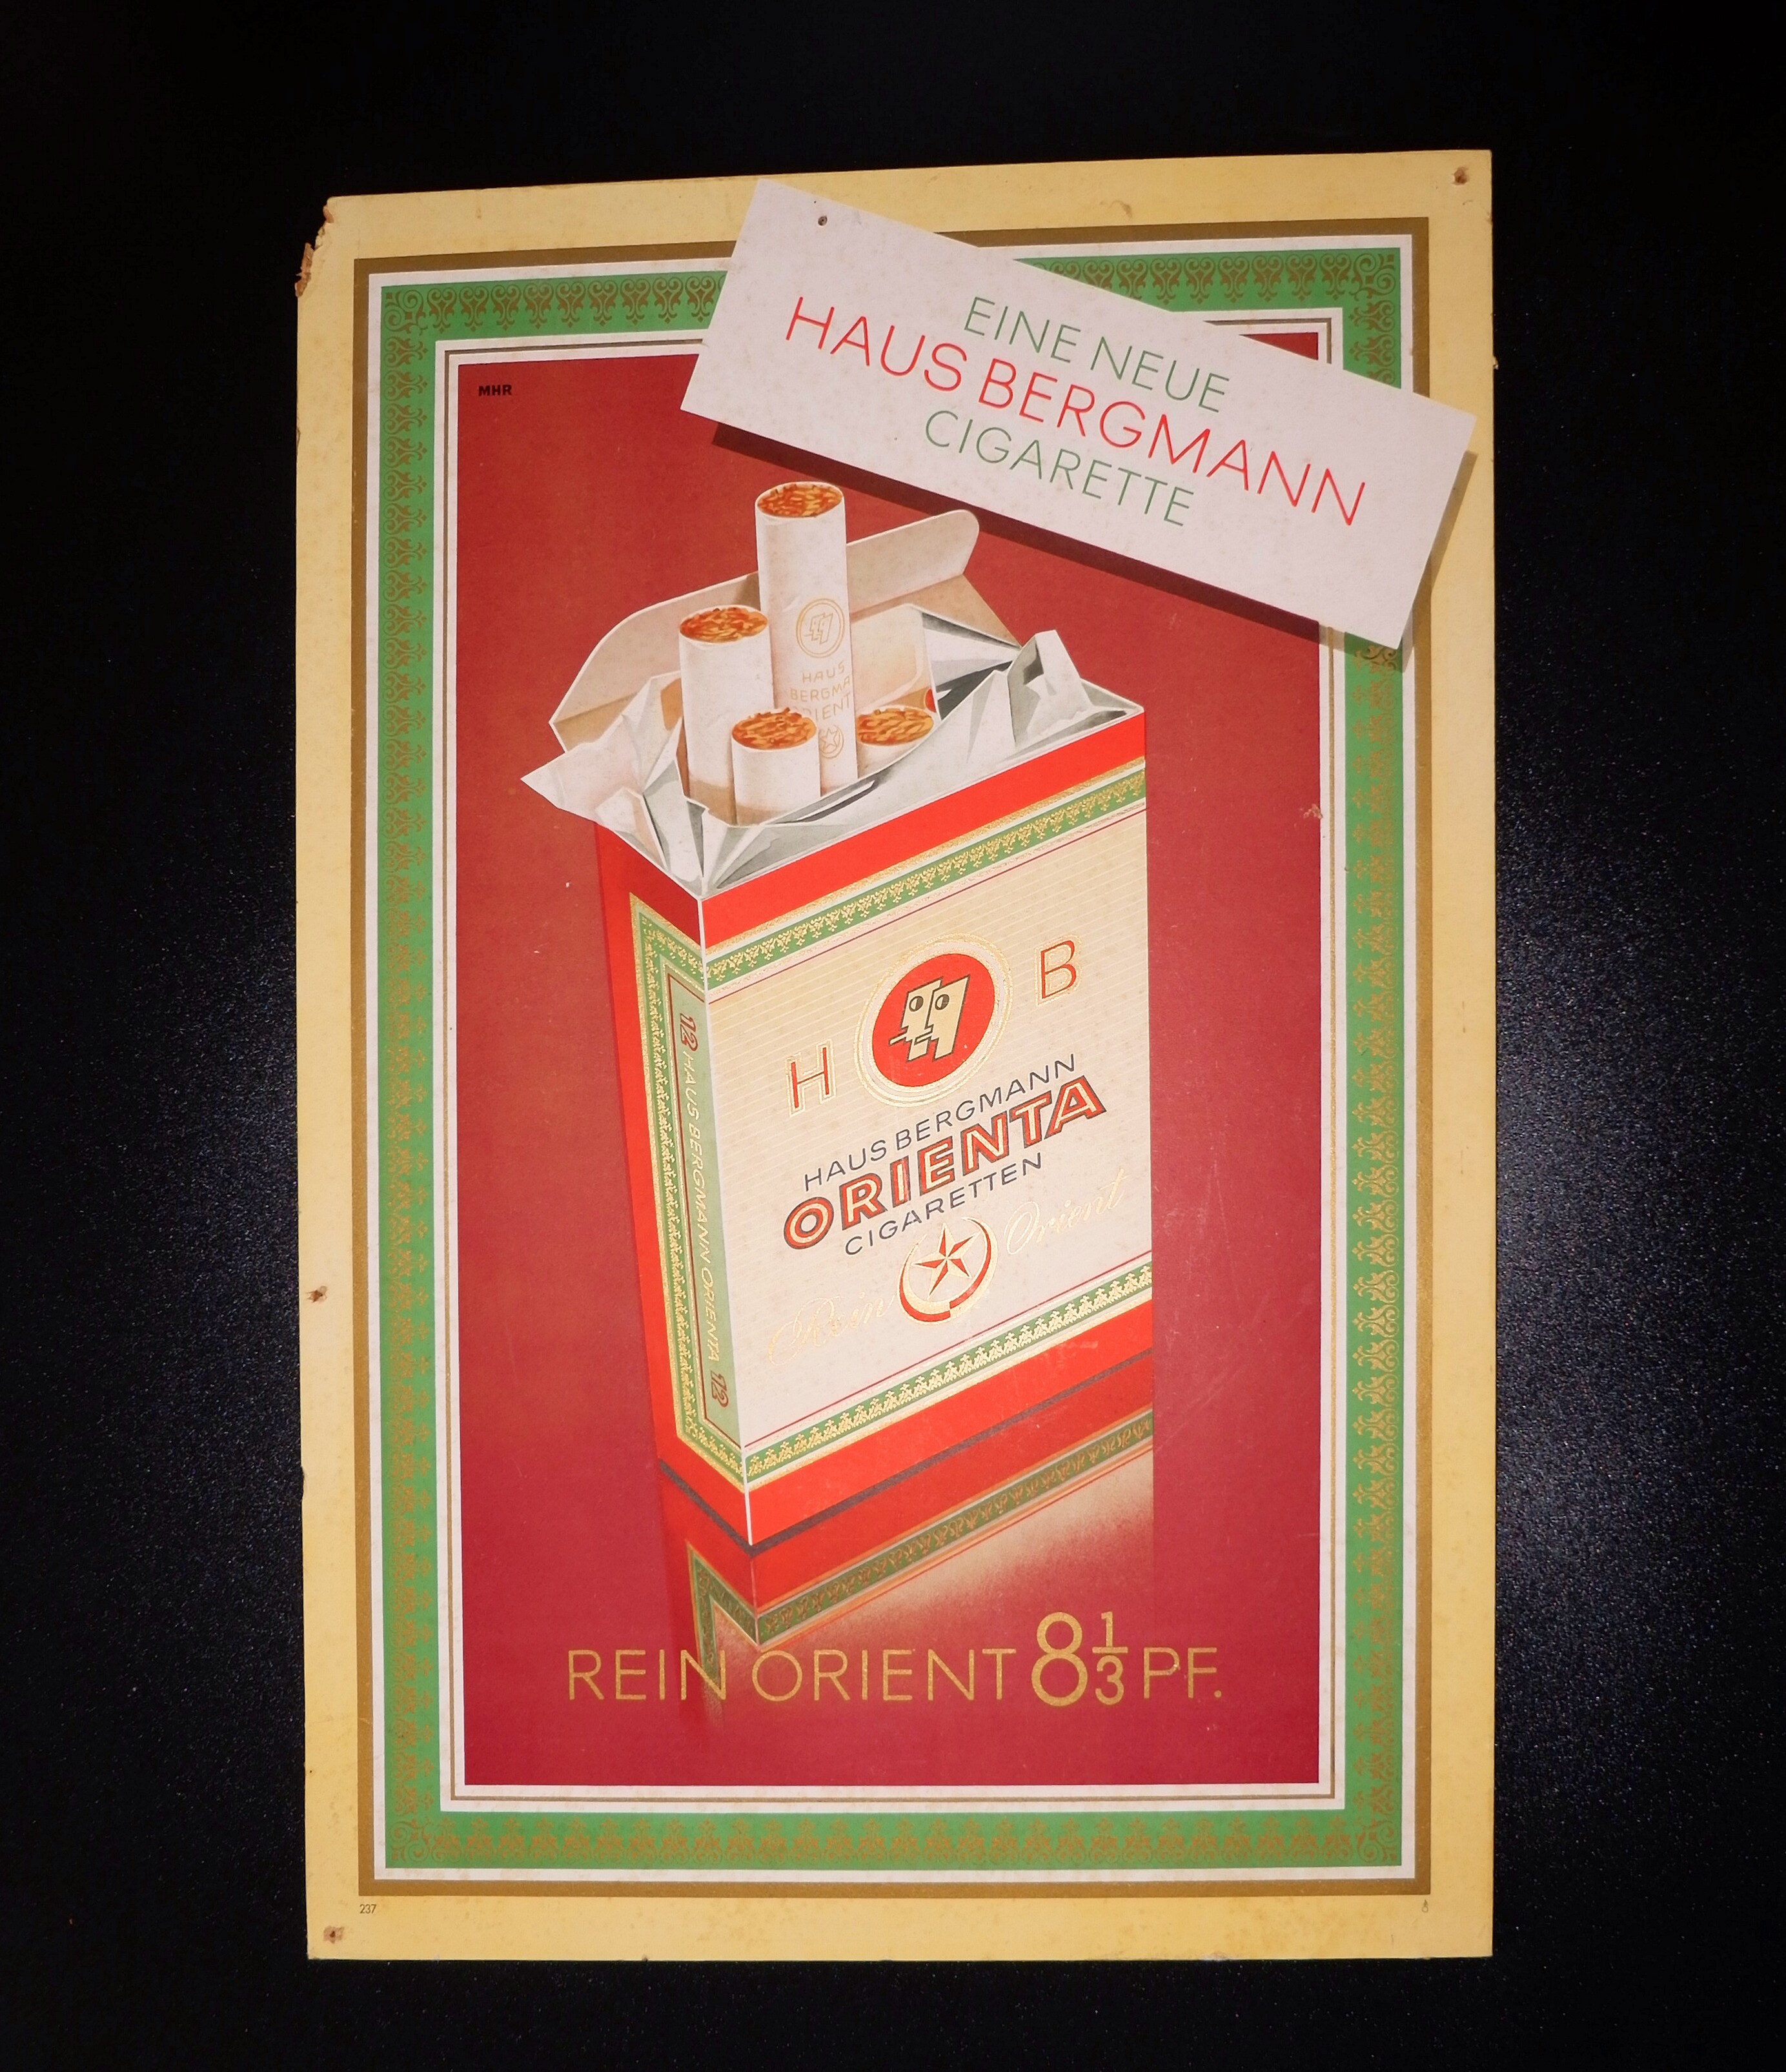 Zigarettenmarke	Orienta - Werbeplakat (Volkskunde- und Freilichtmuseum Roscheider Hof CC0)